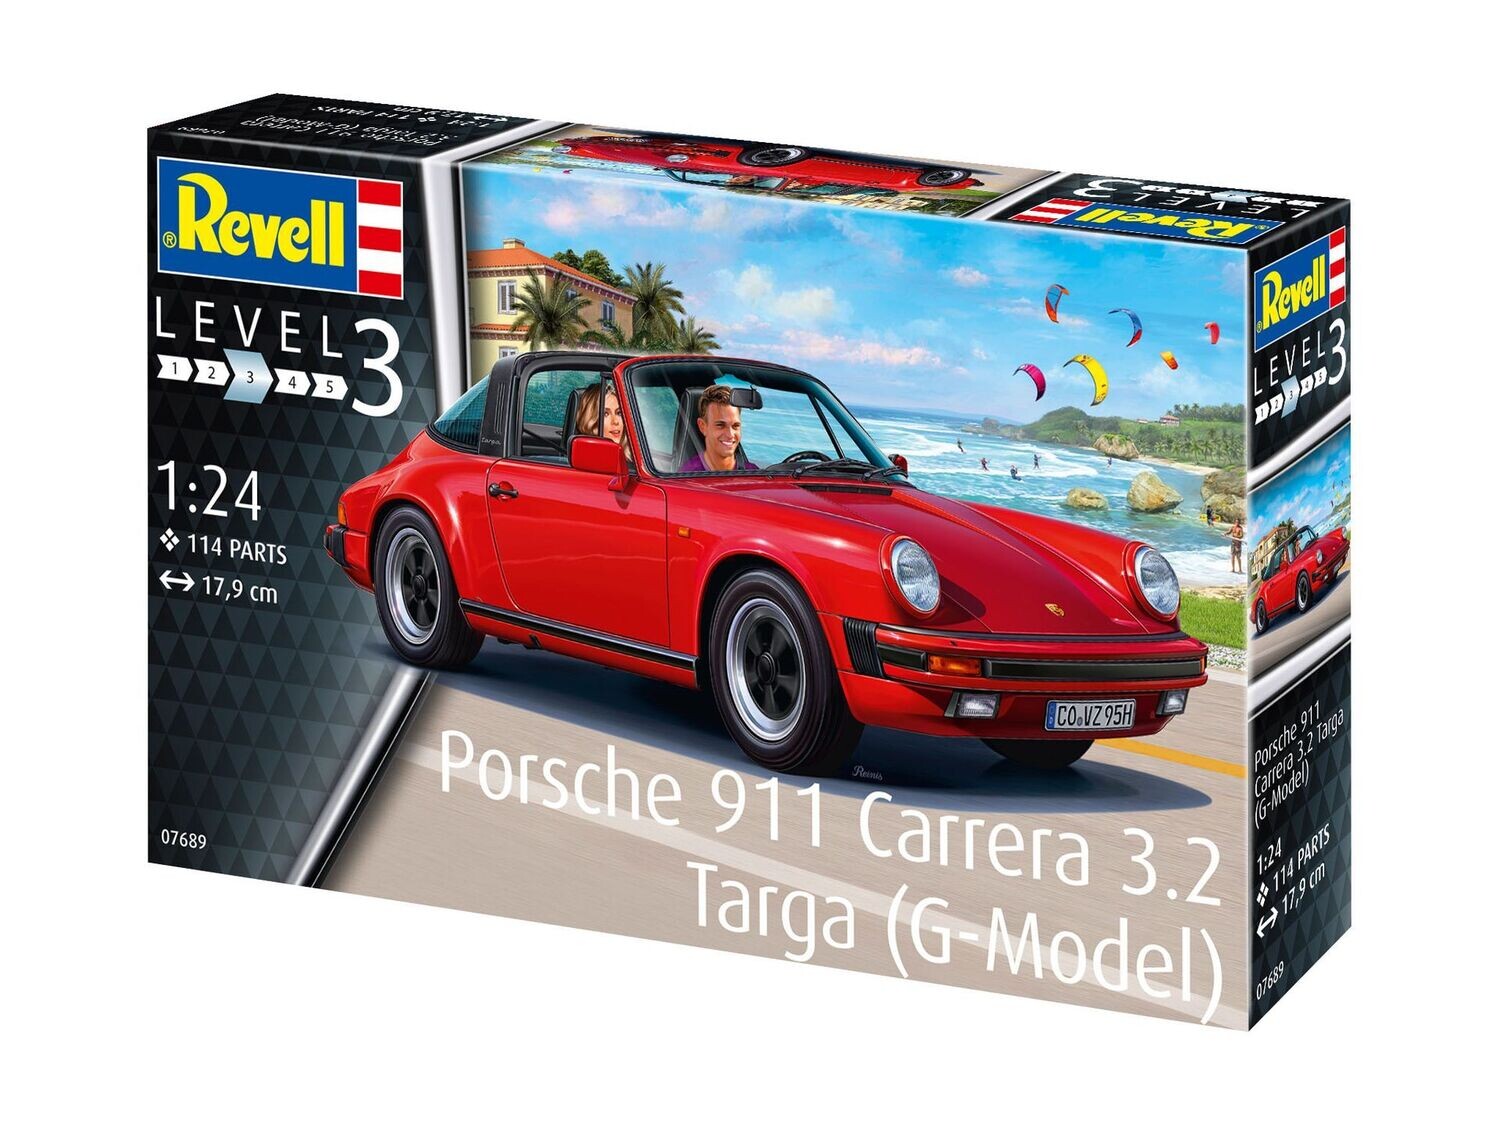 Revell 07689 Porsche 911 Carrera 3.2 Targa (G-Model) 1:24 Scale Plastic Model Kit